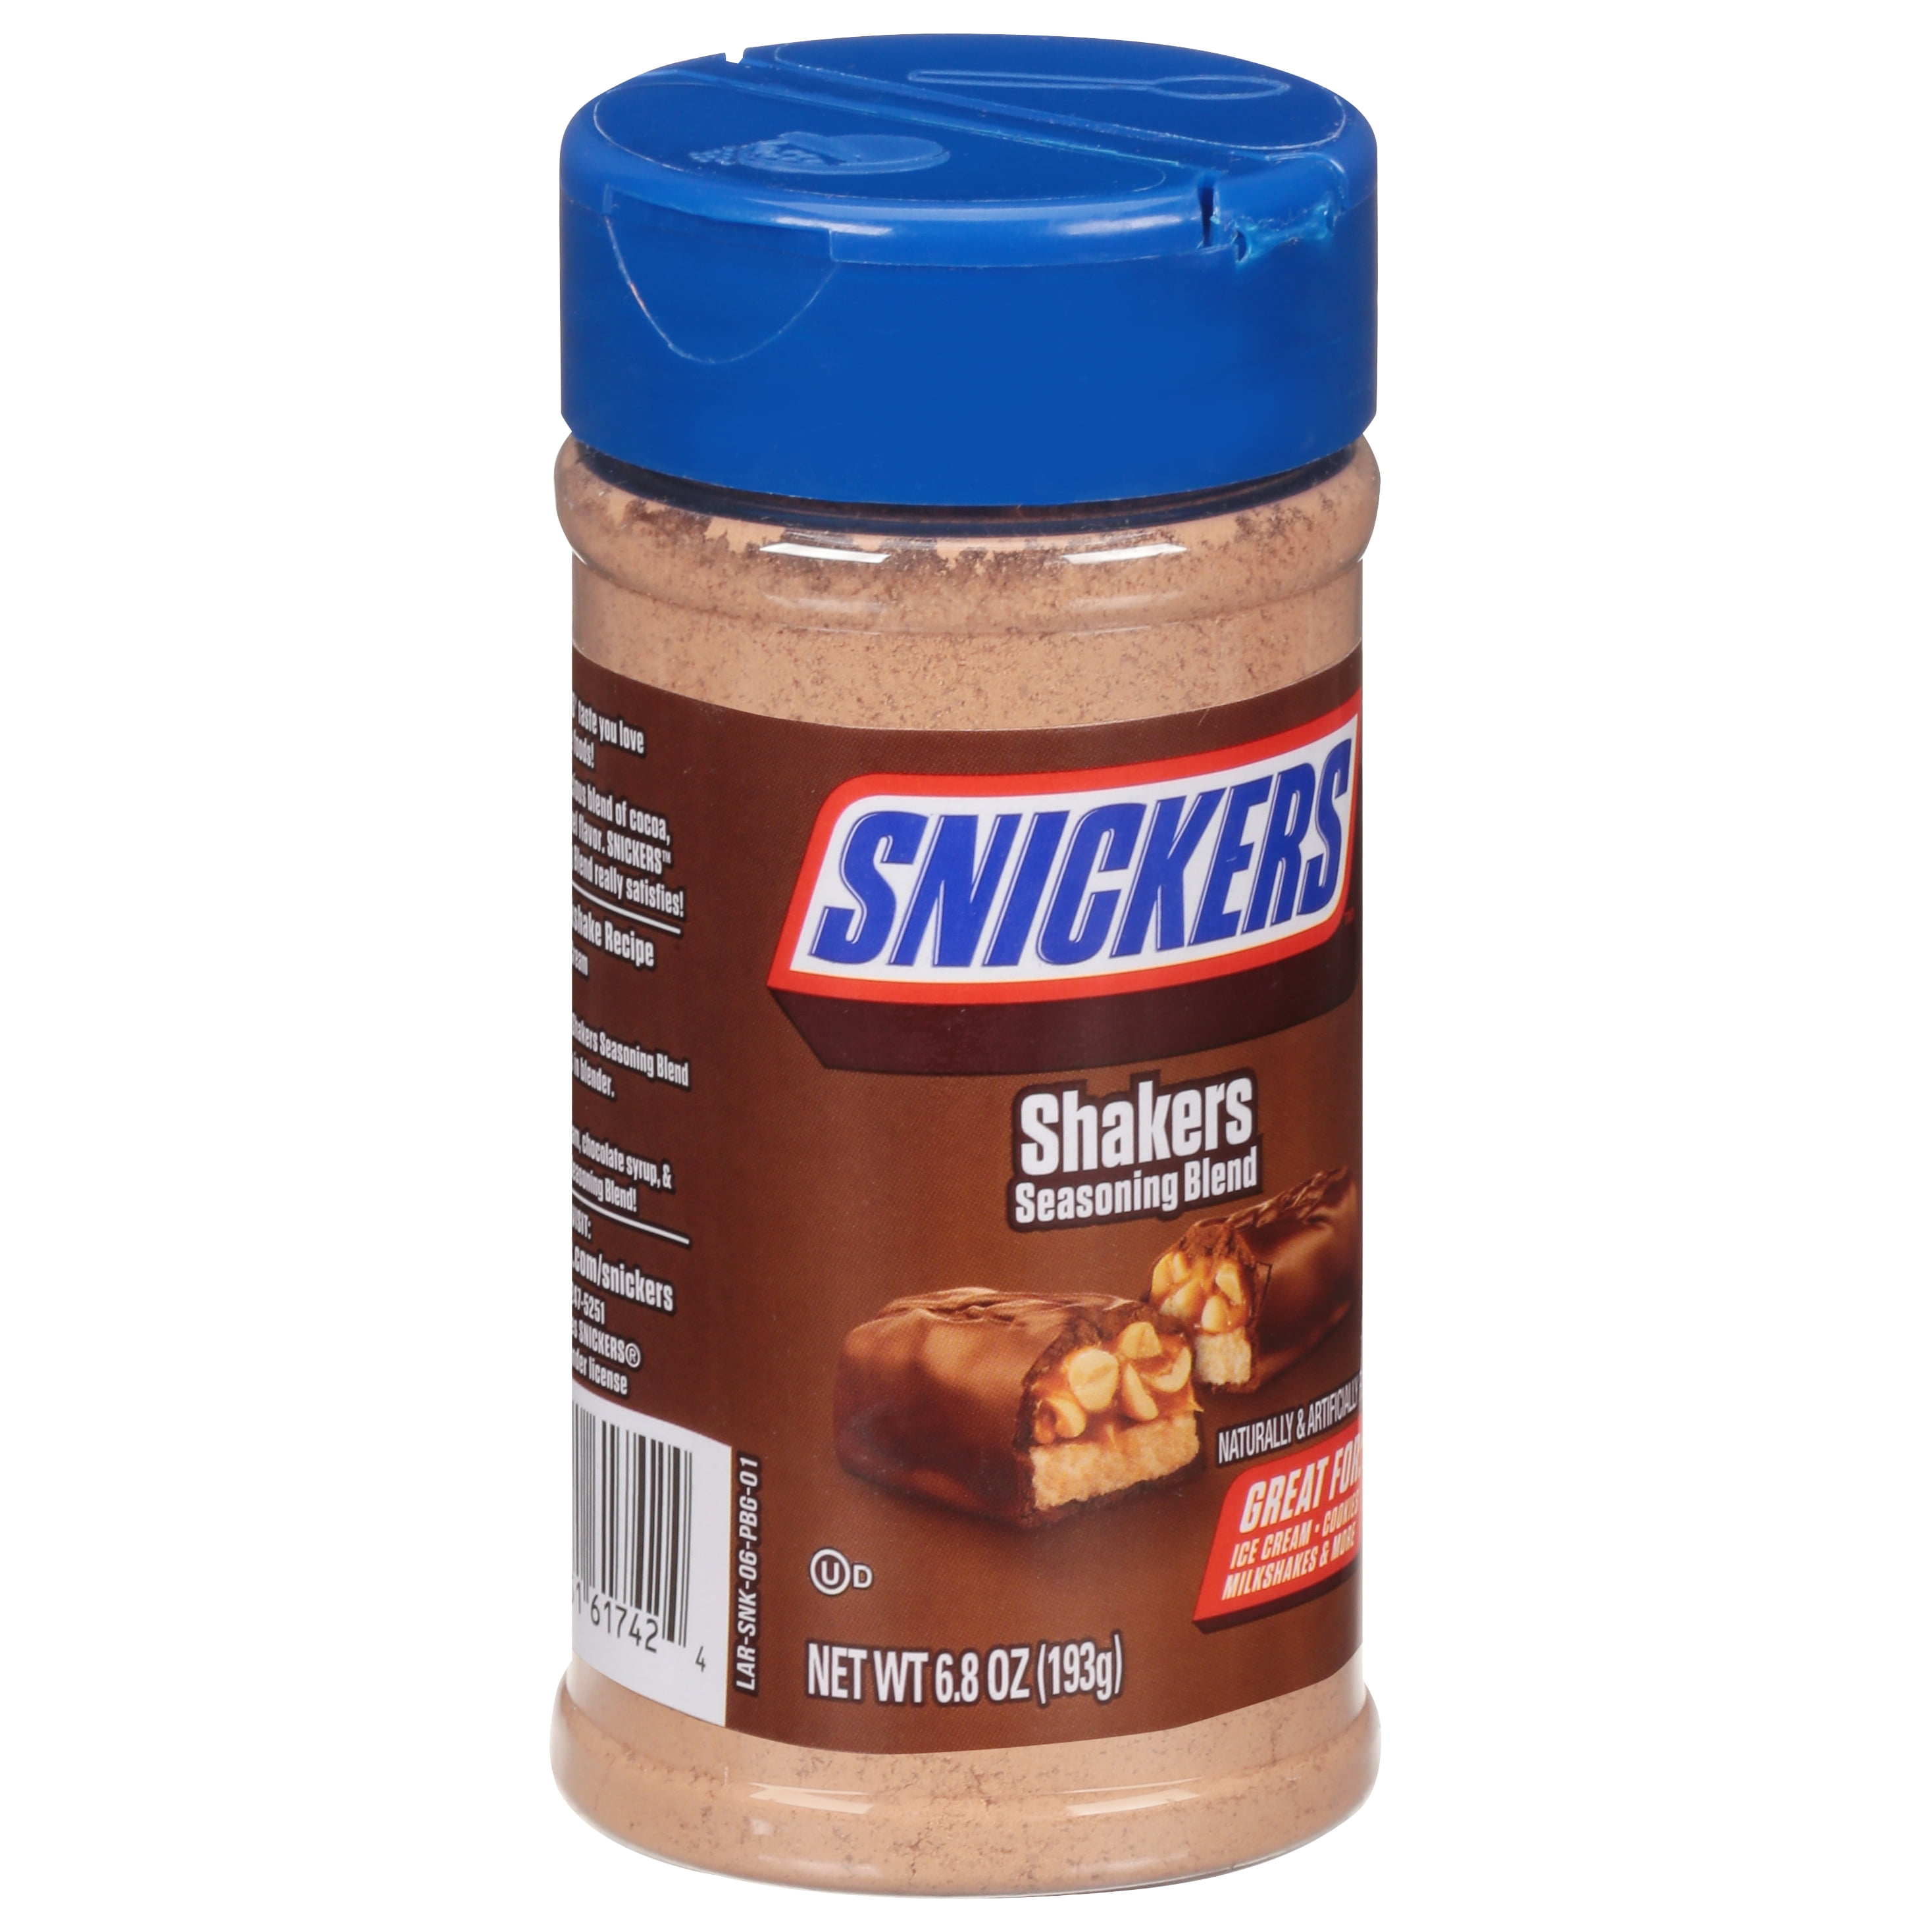 Snickers-Flavored Seasoning Is Coming Soon